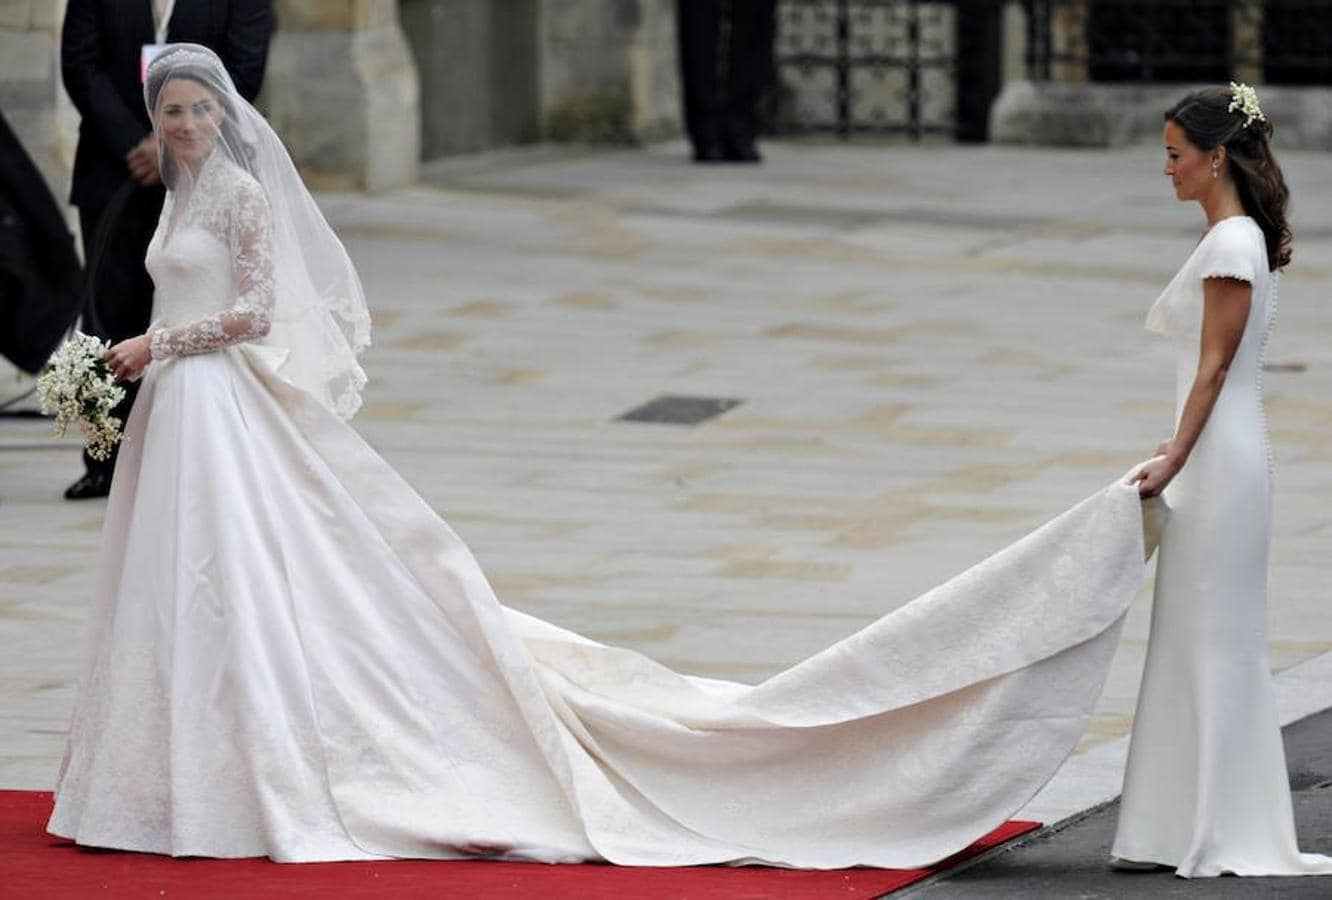 La imagen de su trasera enfundada en un espectacular vestido blanco de Alexander McQueen dio la vuelta al mundo consagrándola como una de las solteras más codiciadas del momento